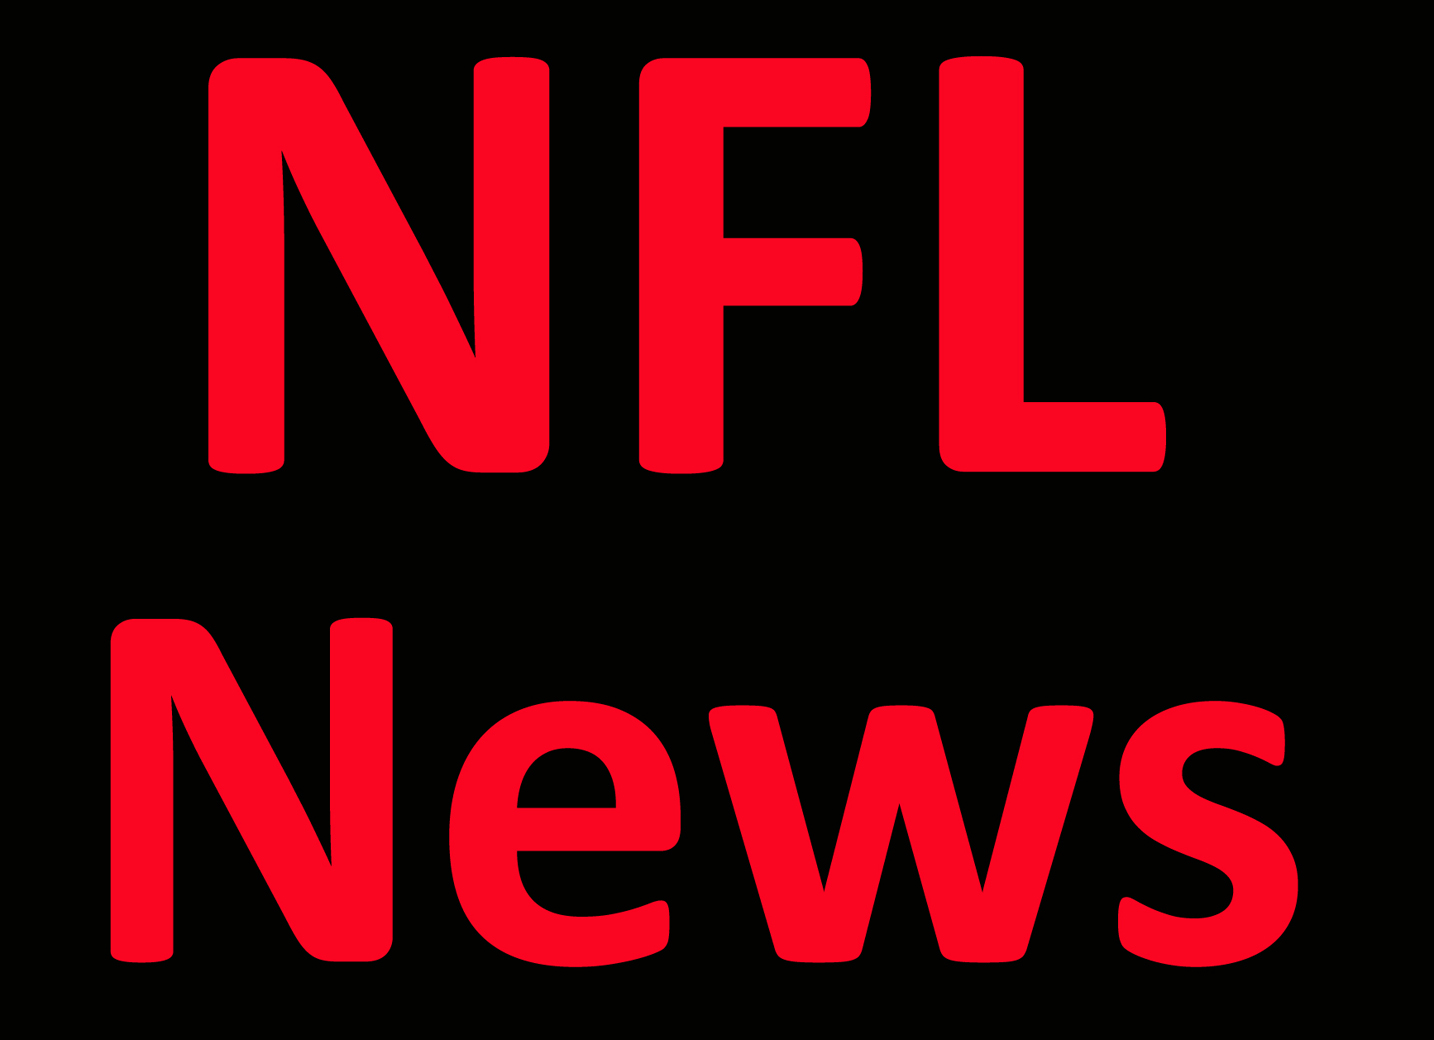 NFL News: Giants’ Jones practices, making ‘lot of progress’ Per Report